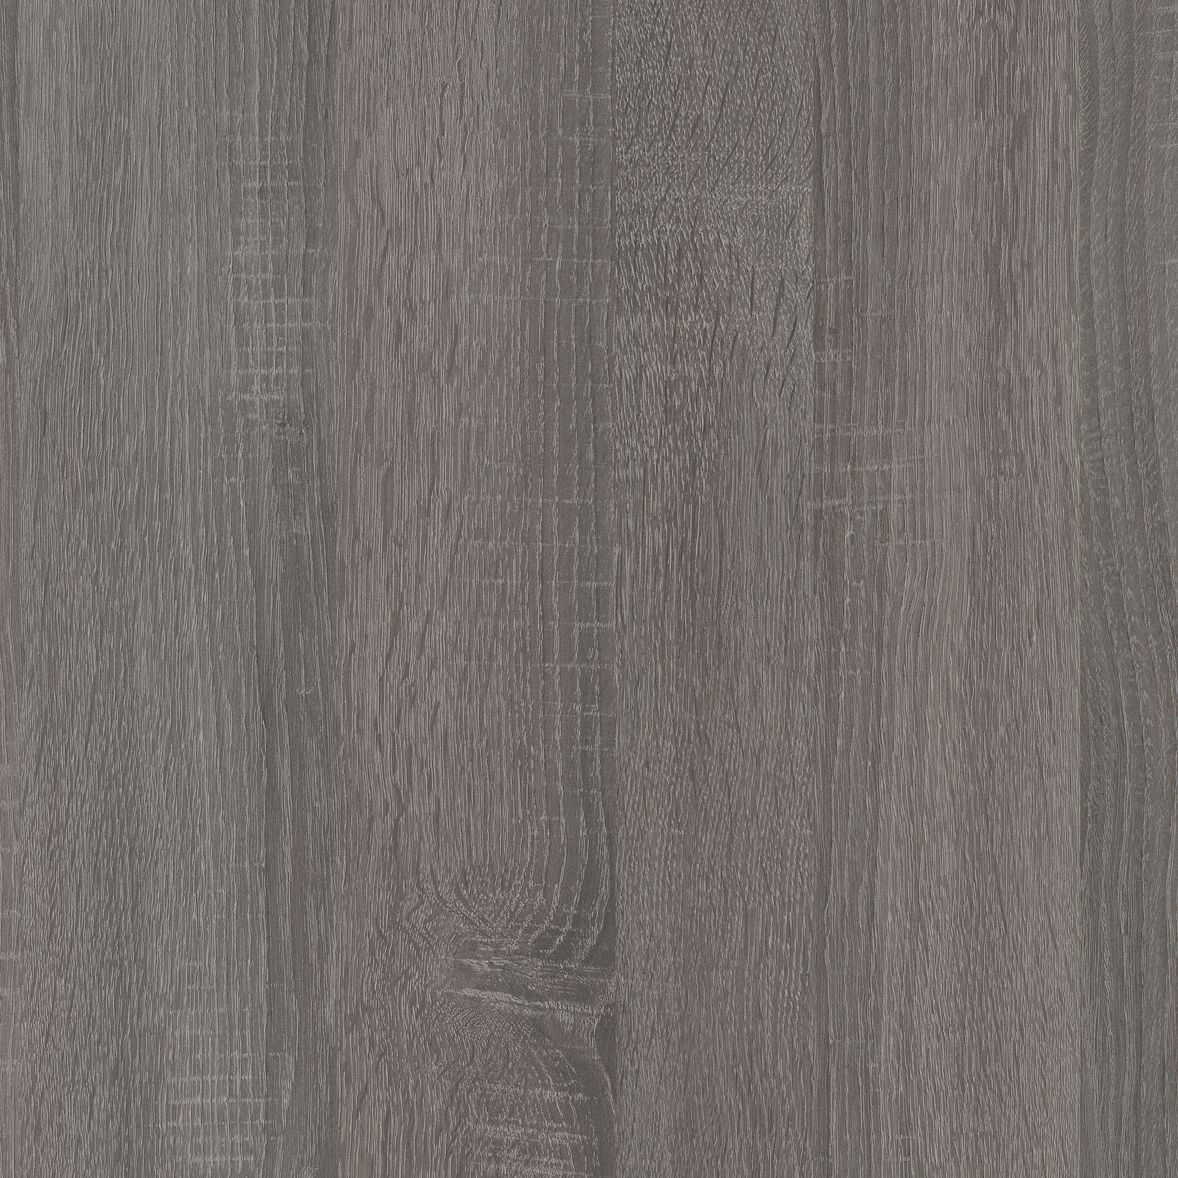 Exilis Topia Wood effect Square edge Laminate Worktop 1.25cm x 42.5cm x 240cm